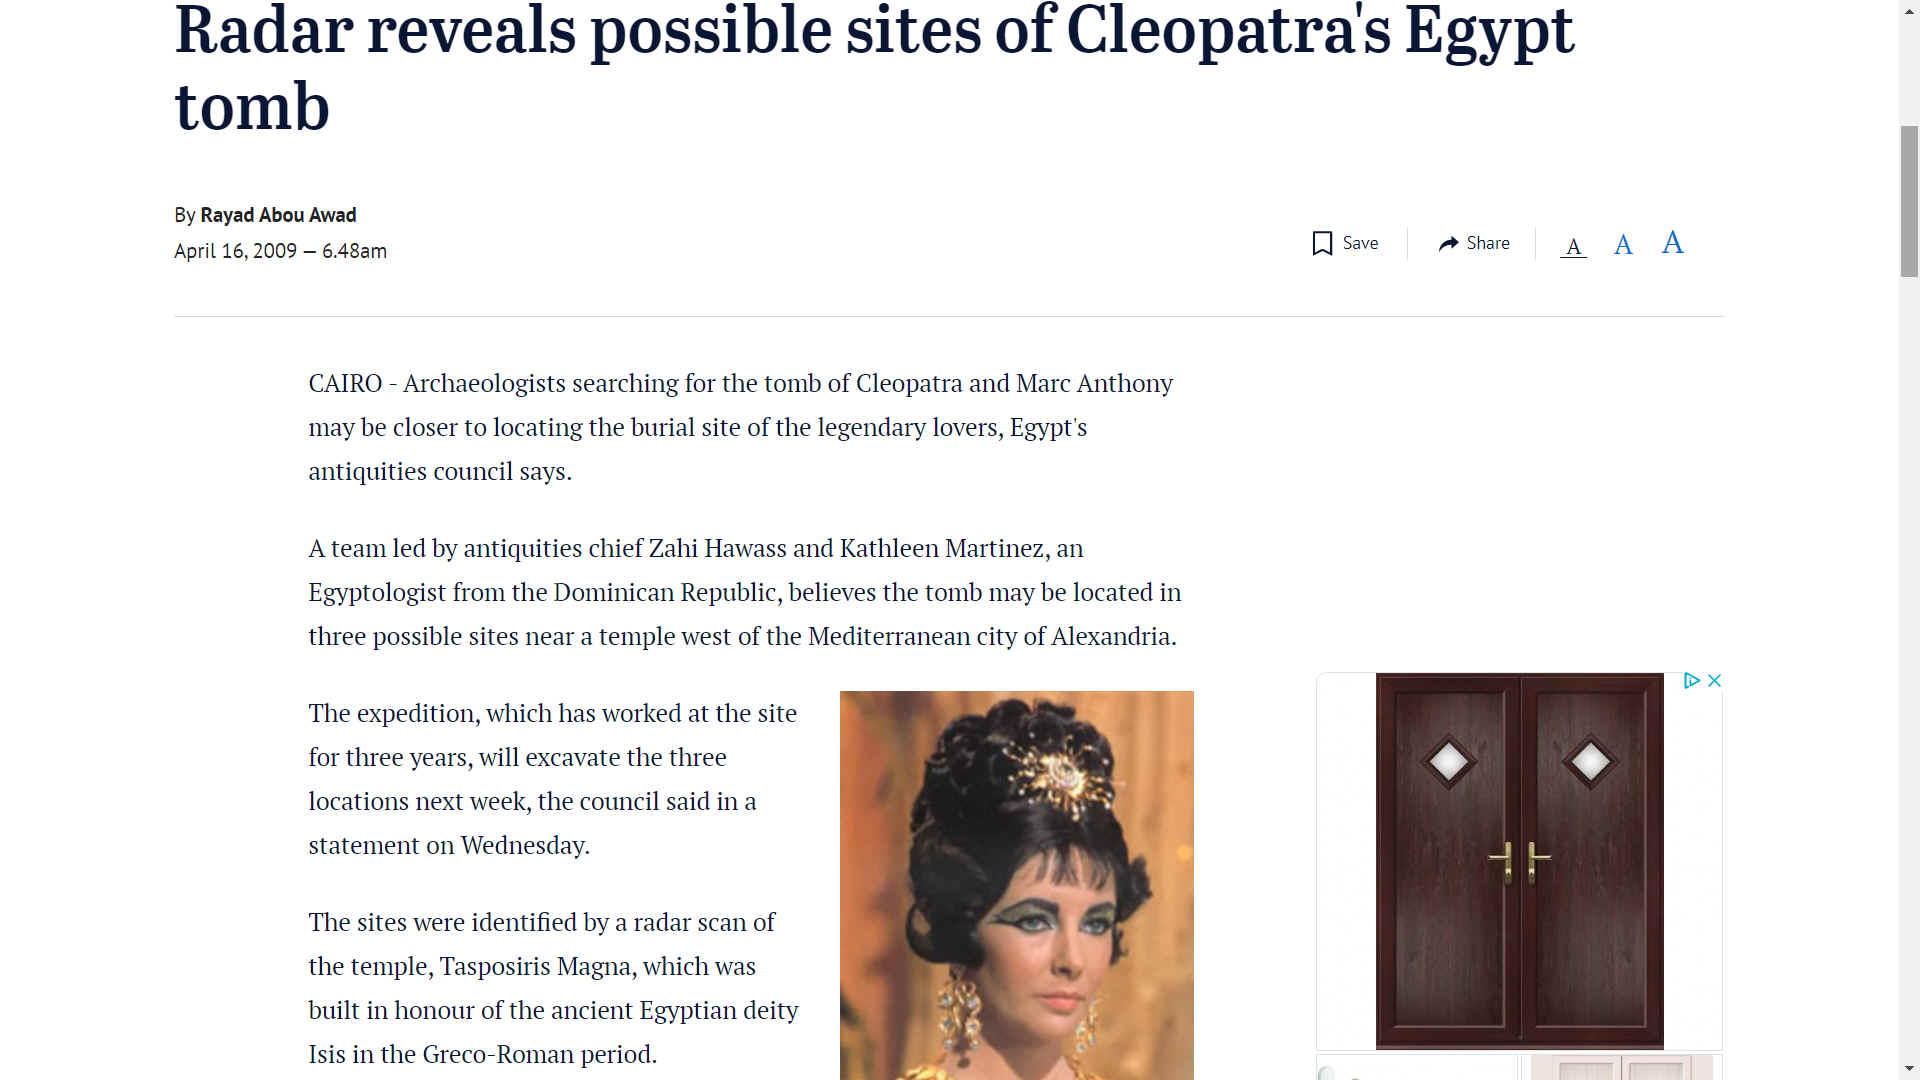 Brisbane Times April 2009, radar reveals possible sites of Cleopatra's tomb